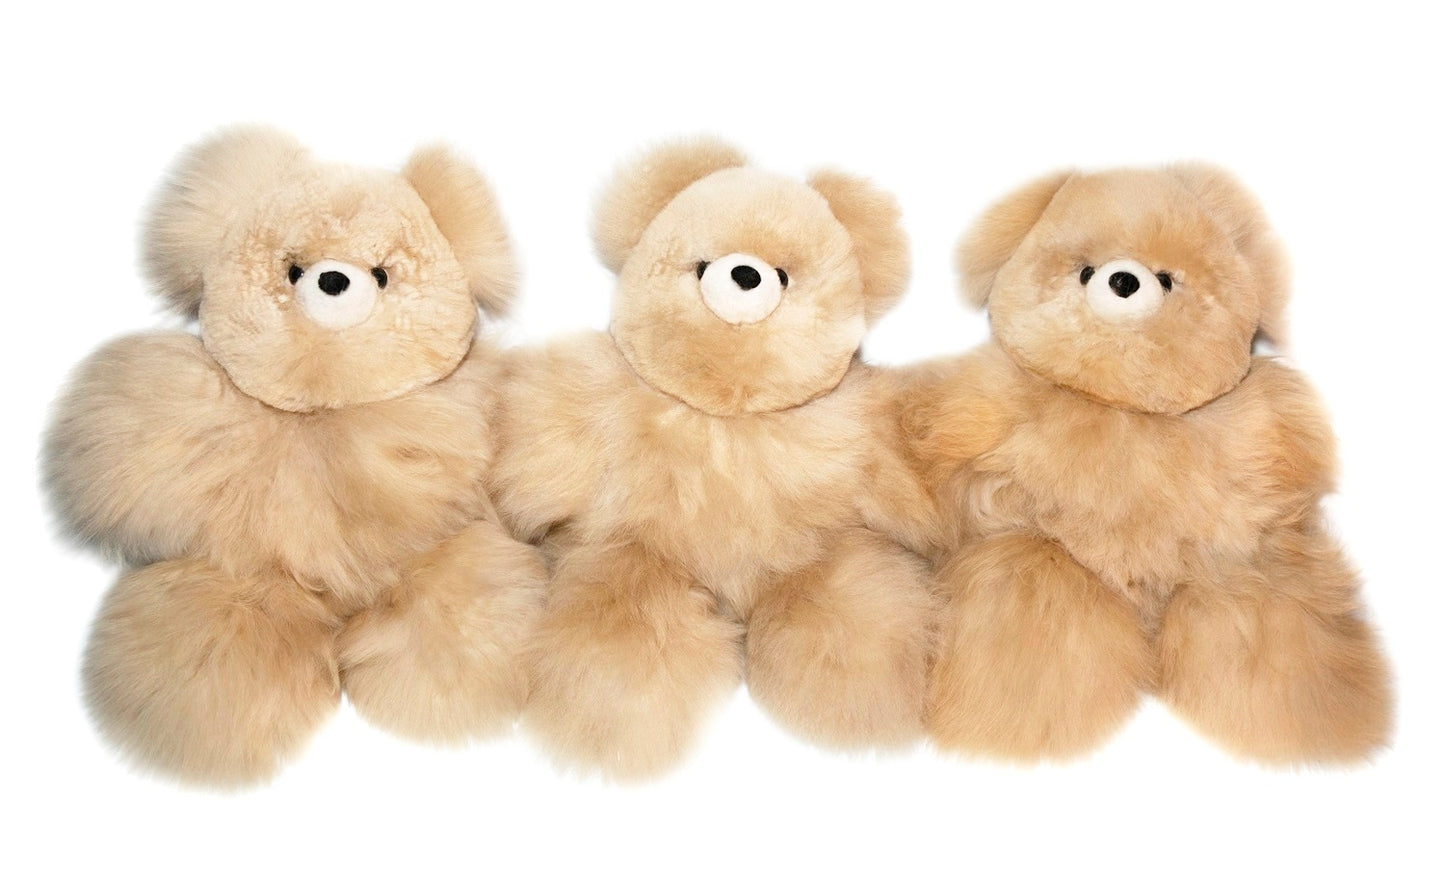 Teddy Bear Handmade on Baby Alpaca Fur. Soft Alpaca Plush. Fluffy and Cuddly. (12 inches, Beige)